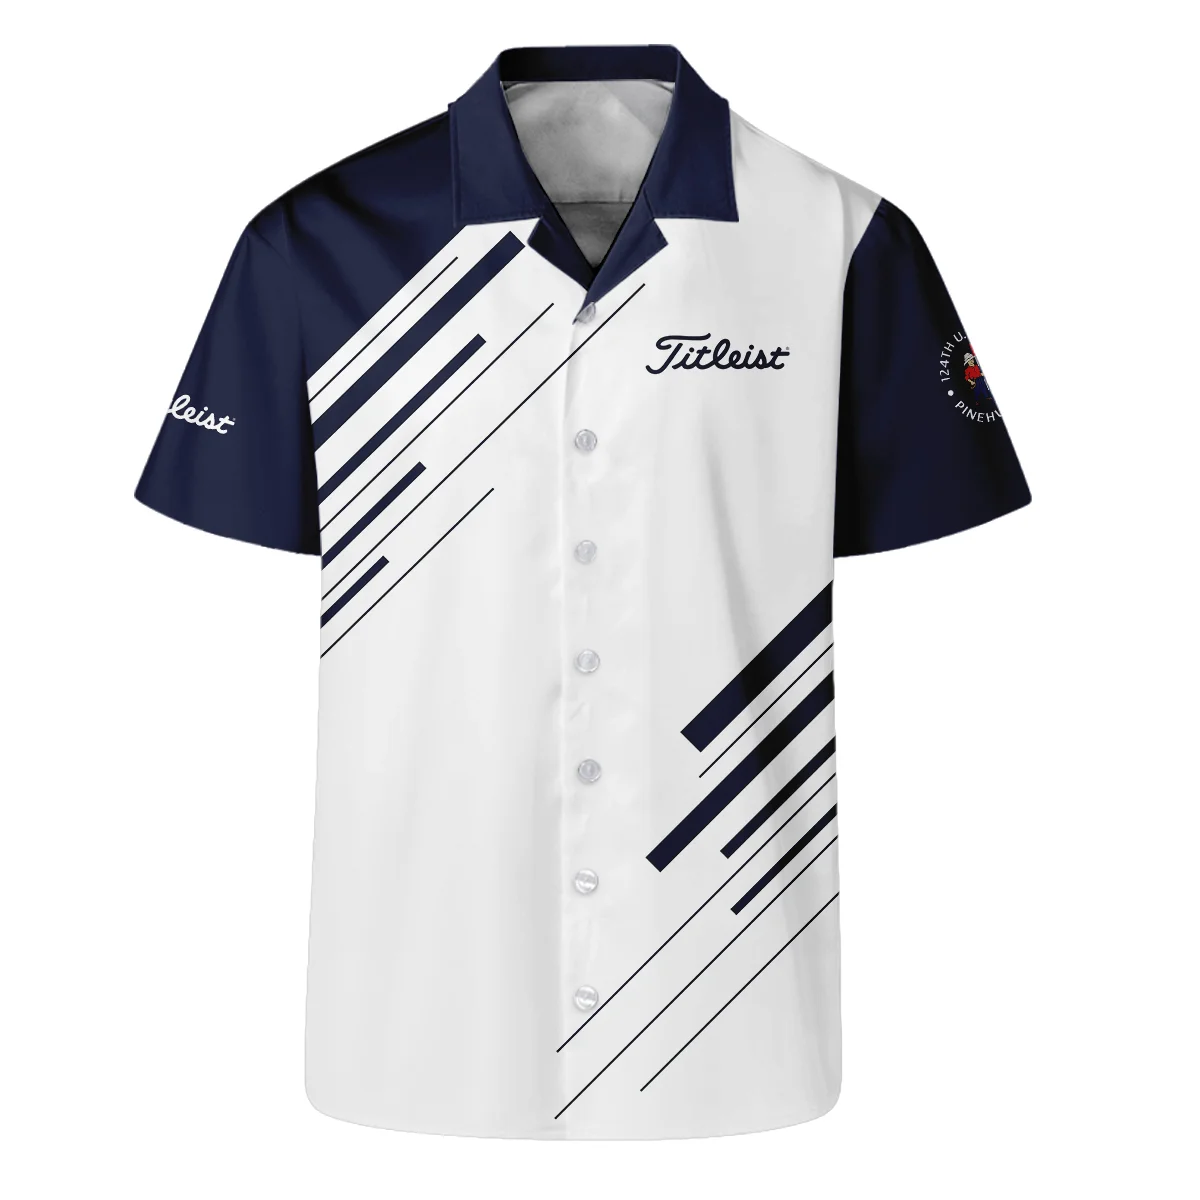 Titleist 124th U.S. Open Pinehurst Golf Long Polo Shirt Striped Pattern Dark Blue White All Over Print Long Polo Shirt For Men